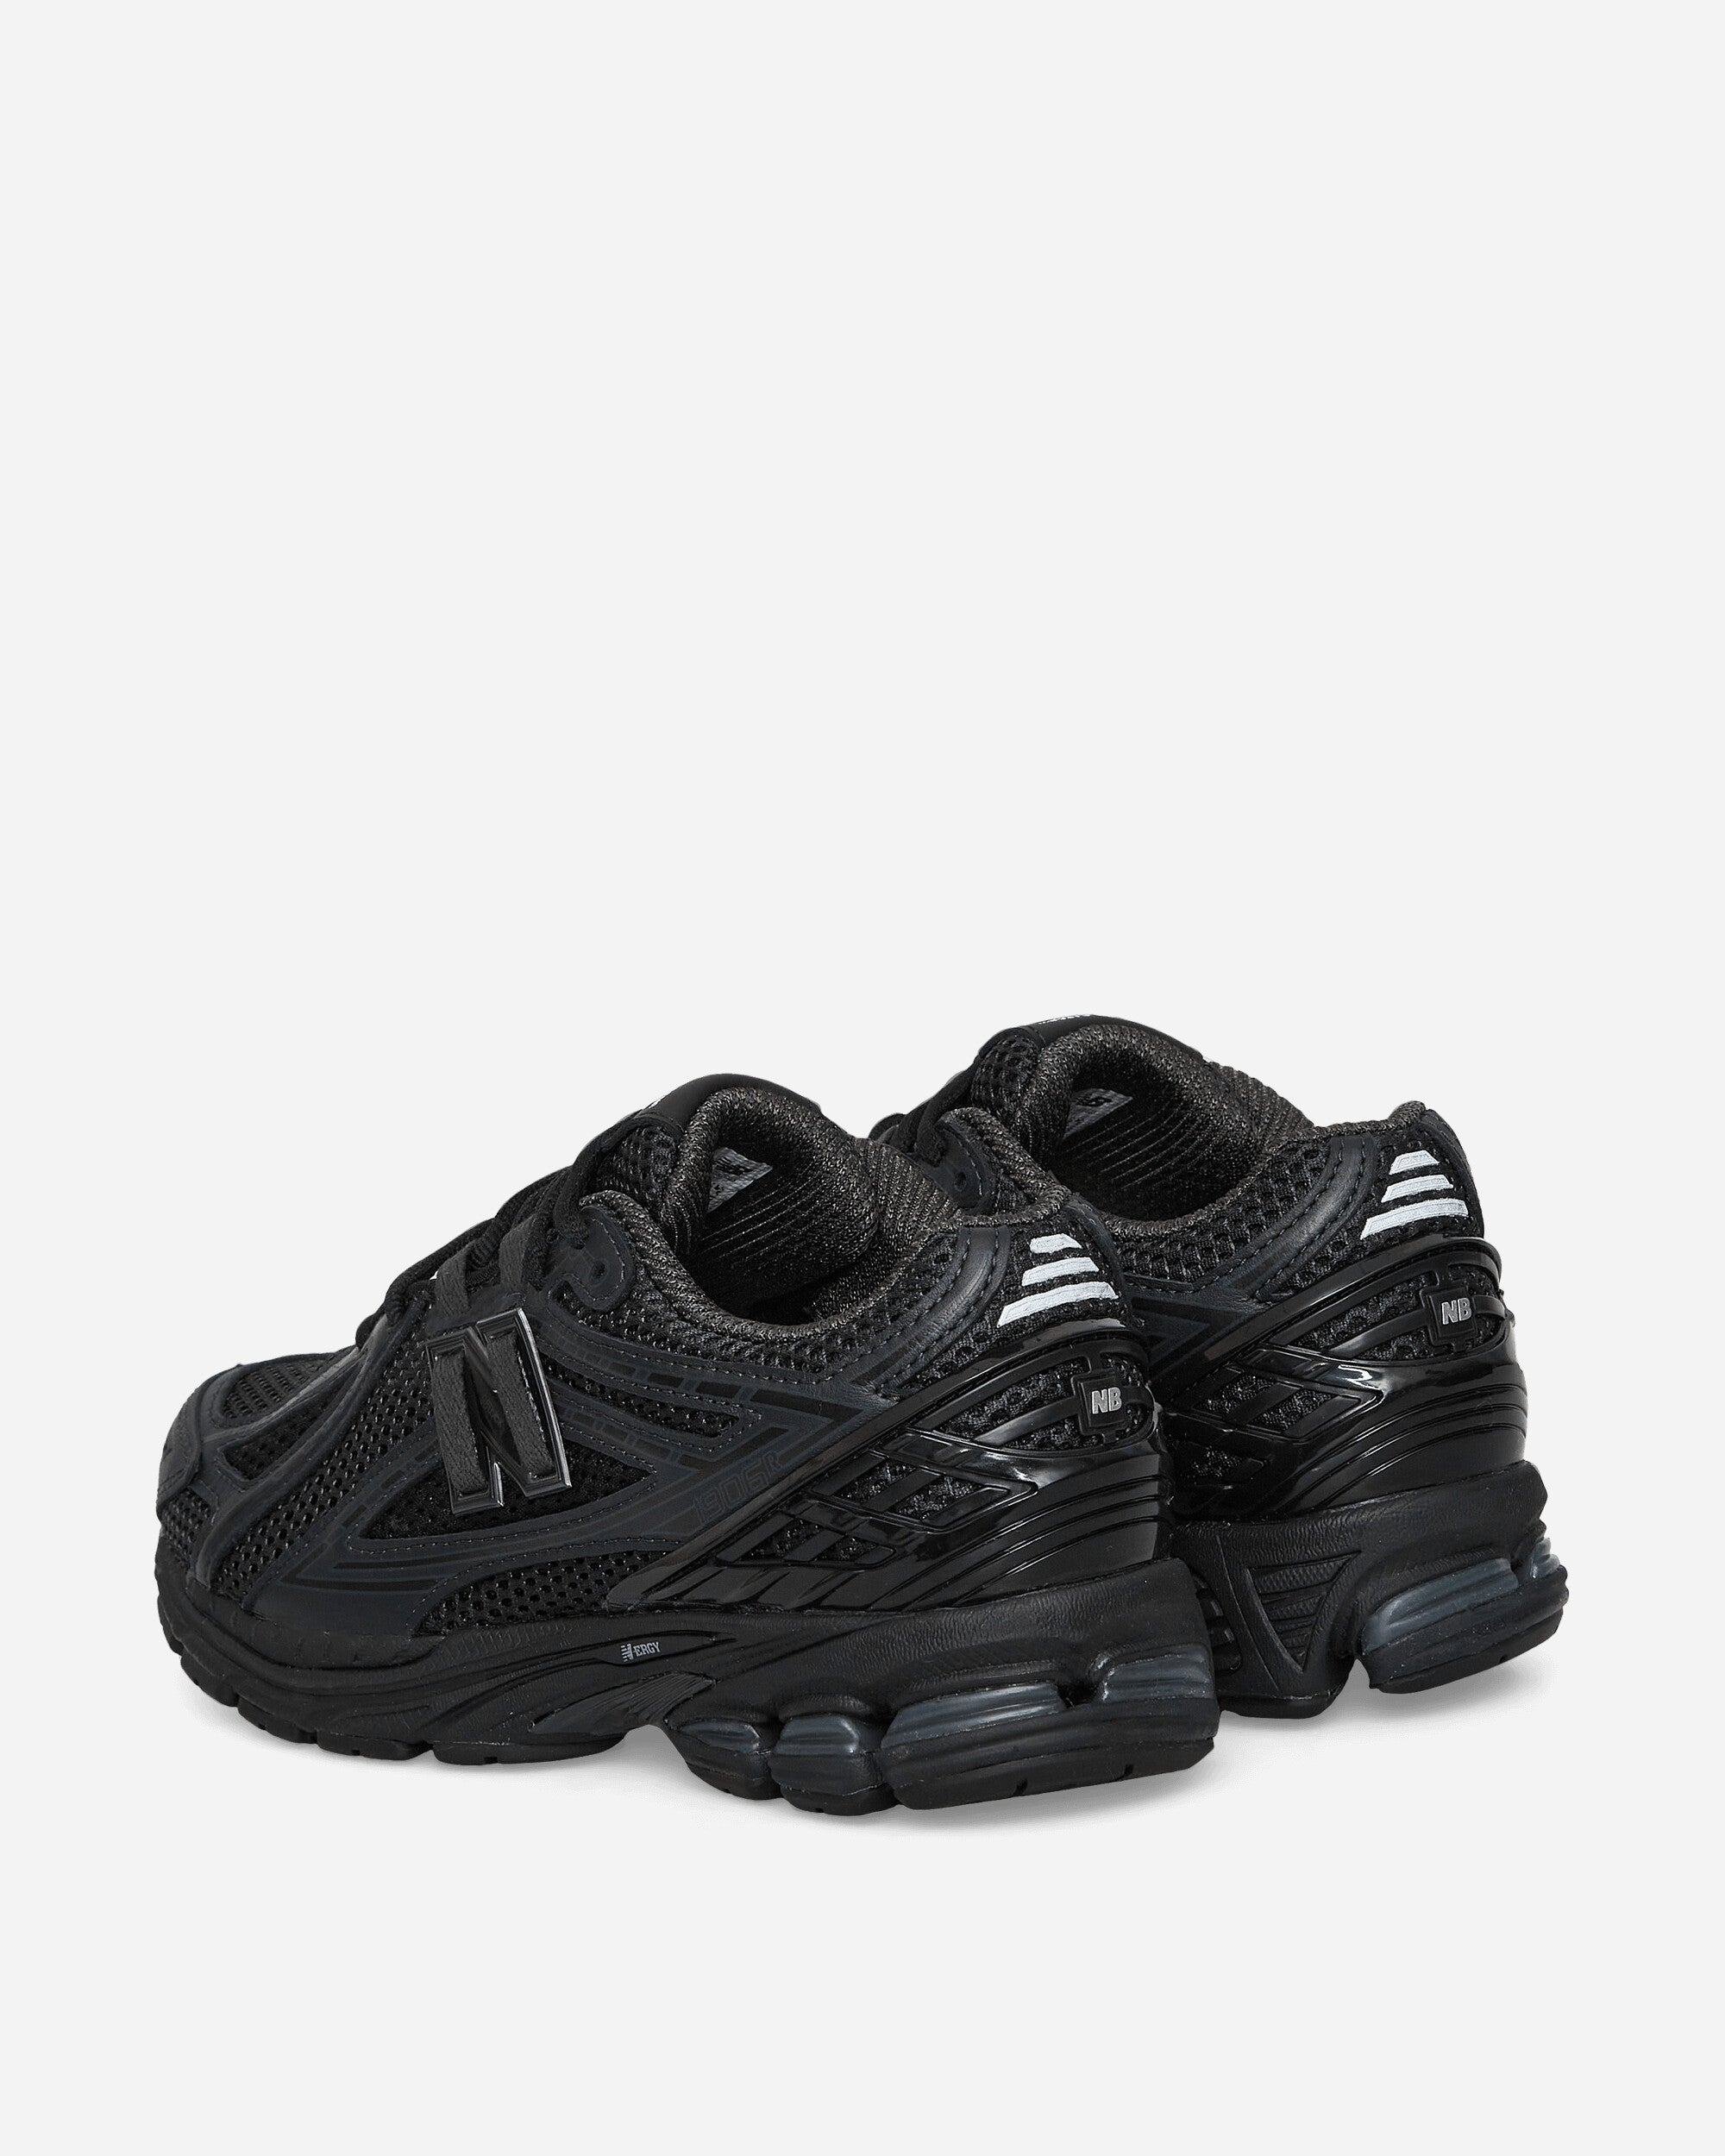 Comme Des Garçons Homme Mens Shoes X New Balance M1906Rcm Black/Black Sneakers Low HL-K101-W23 1